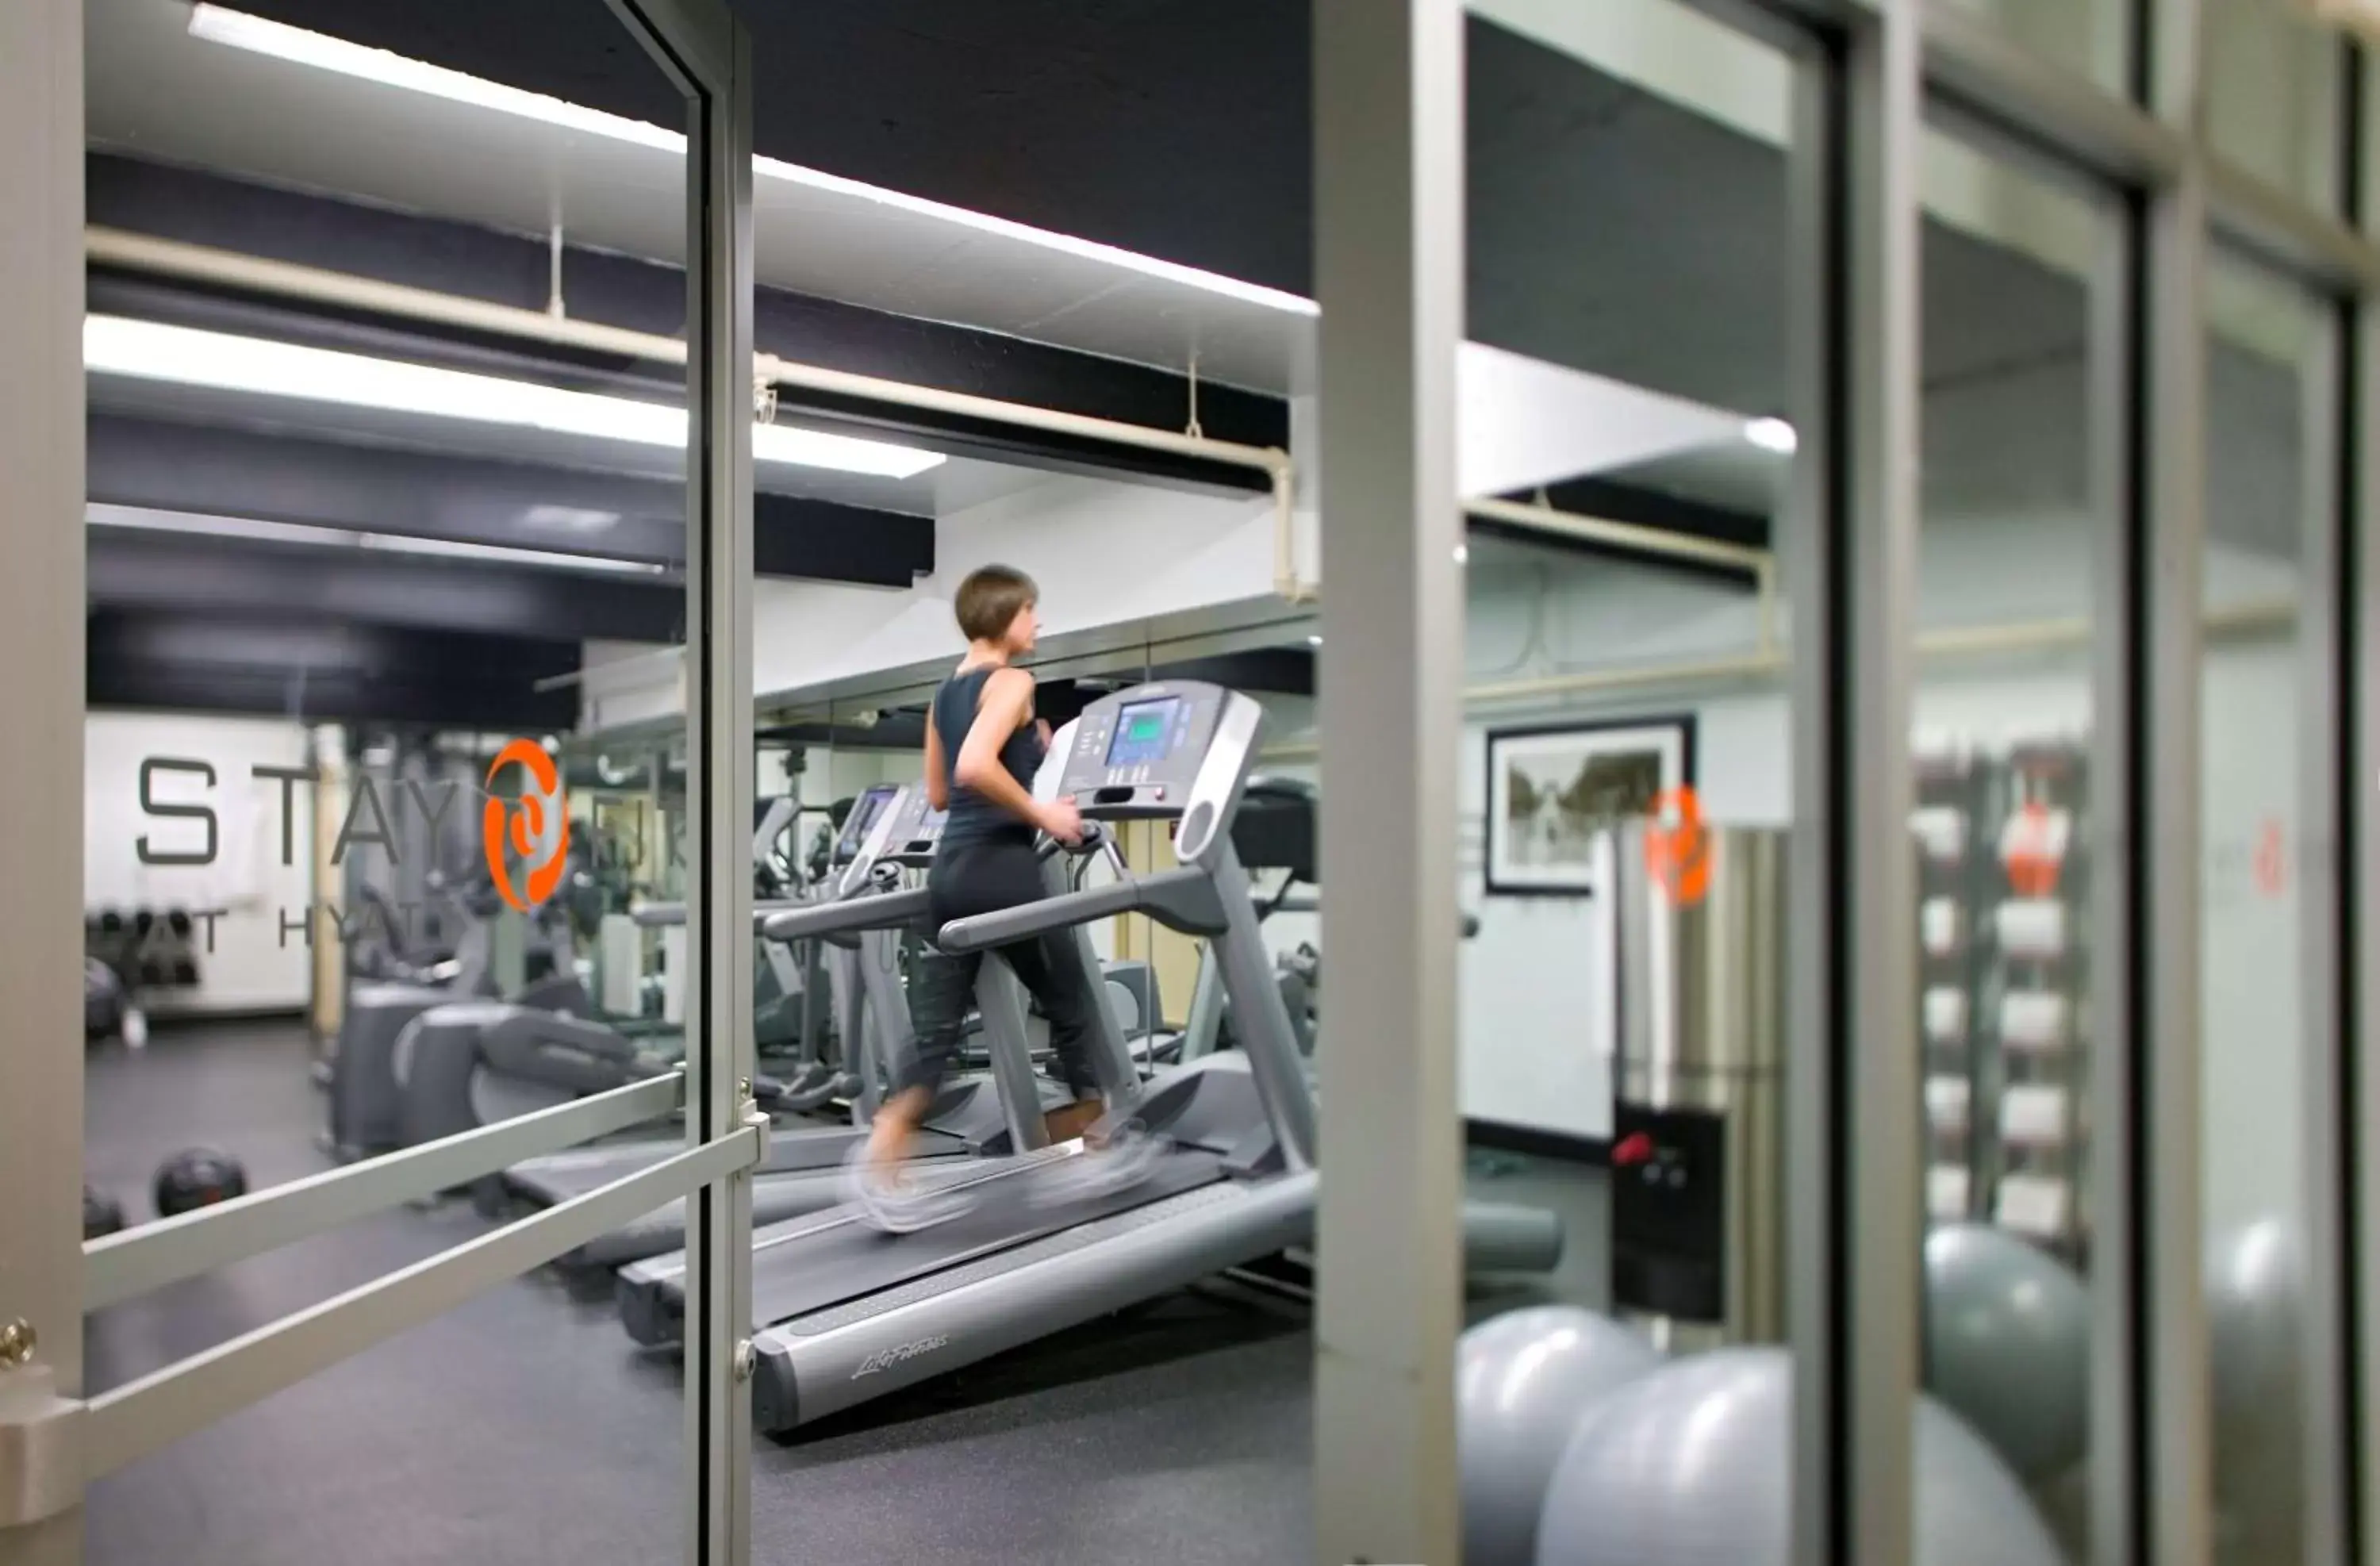 Fitness centre/facilities, Fitness Center/Facilities in Hyatt Regency Miami